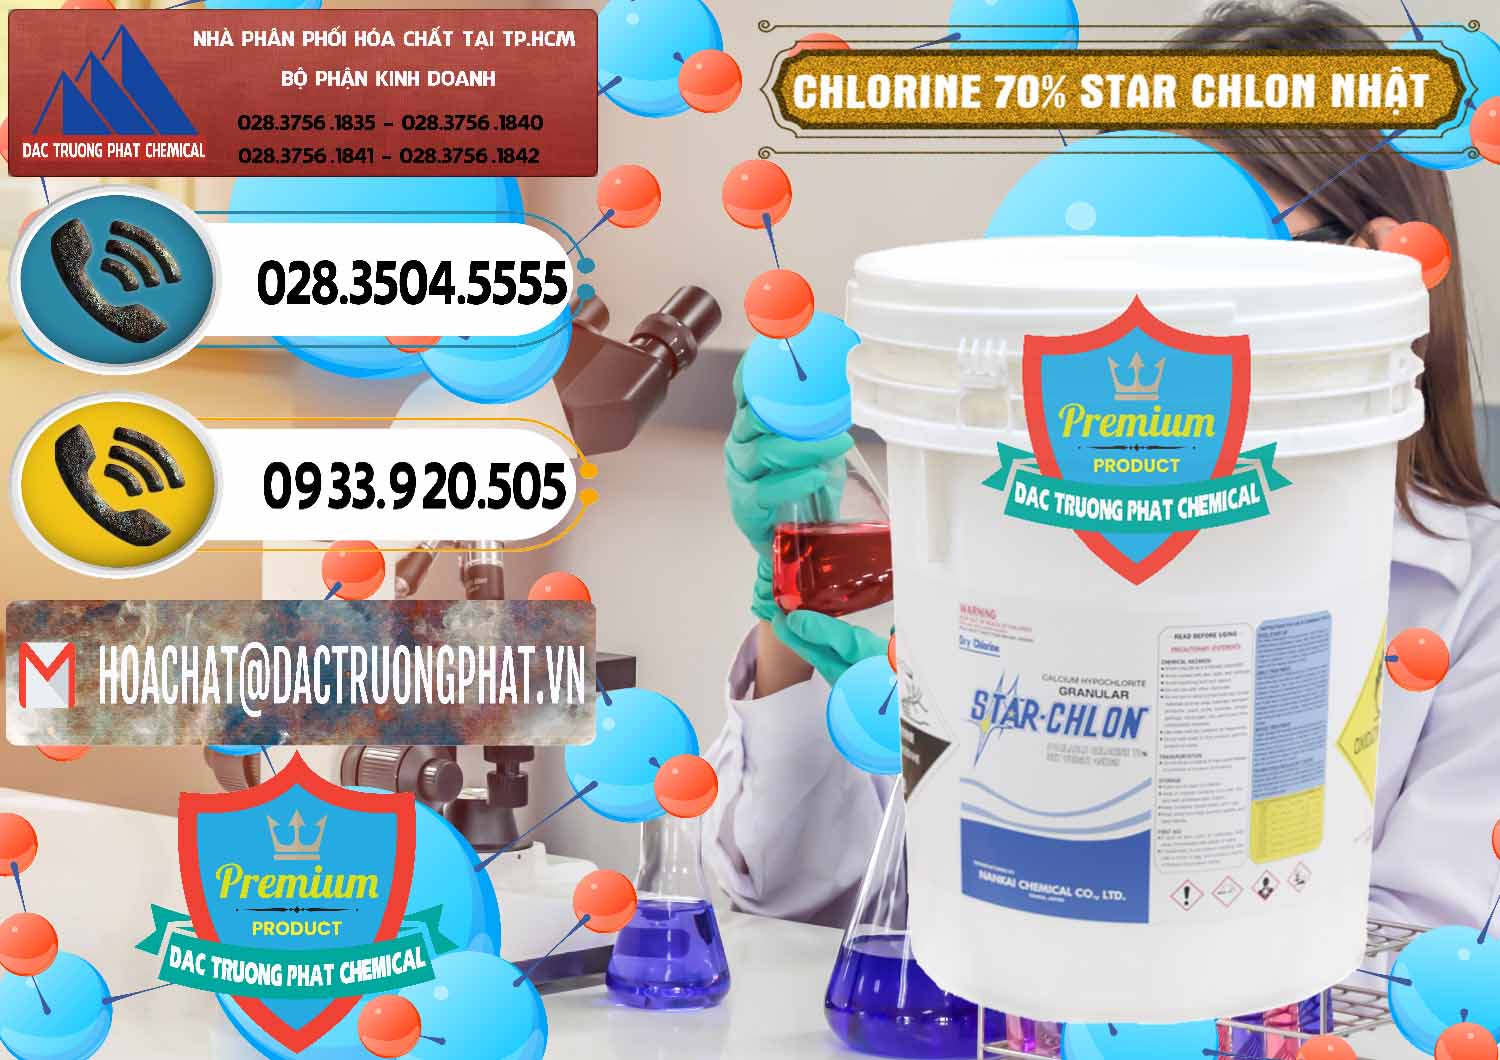 Nơi chuyên nhập khẩu ( bán ) Clorin – Chlorine 70% Star Chlon Nhật Bản Japan - 0243 - Công ty chuyên cung ứng ( phân phối ) hóa chất tại TP.HCM - hoachatdetnhuom.vn